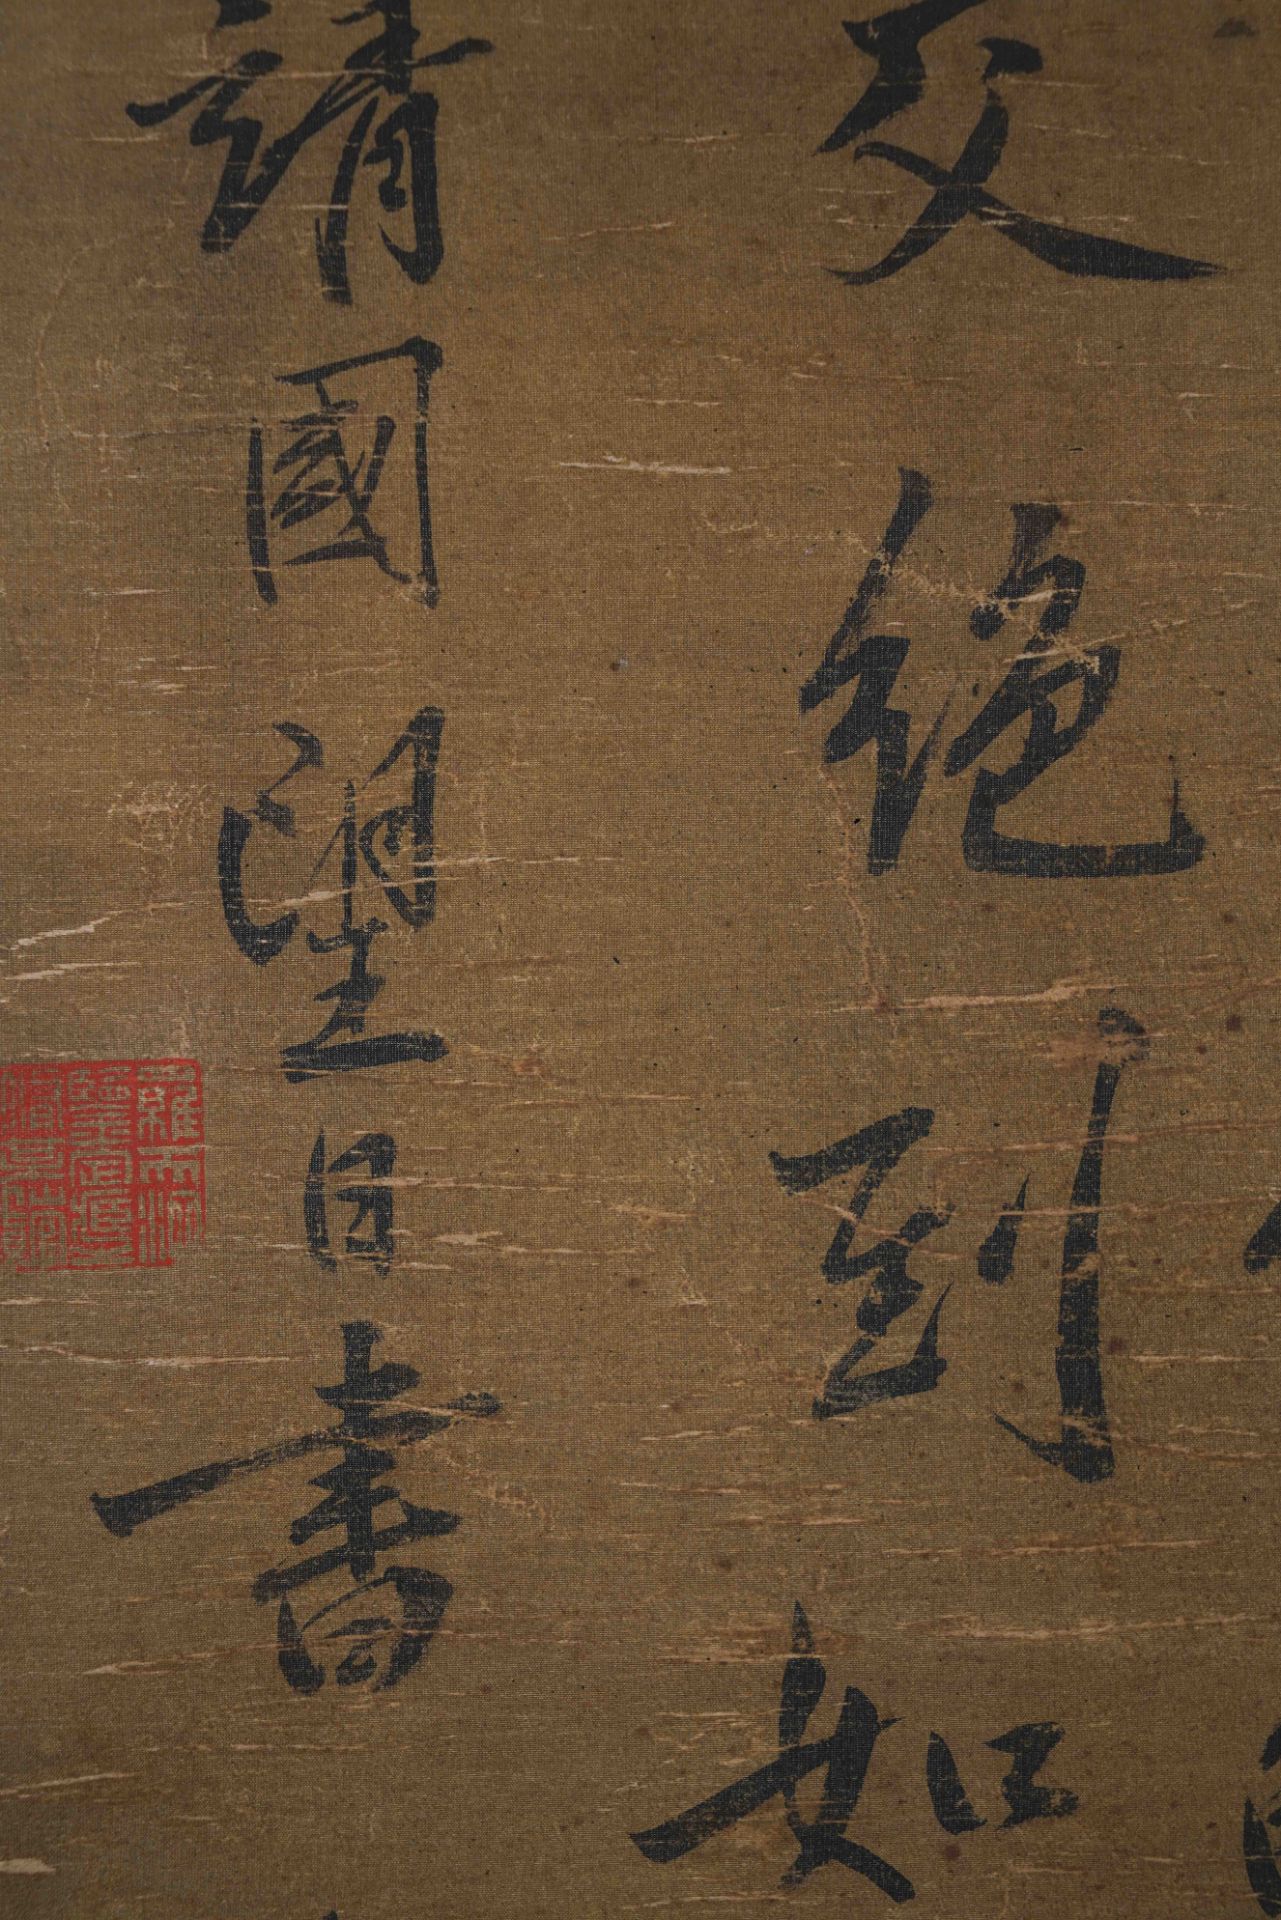 黃庭堅 A Chinese Scroll Calligraphy By Huang Tingjian - Image 5 of 13